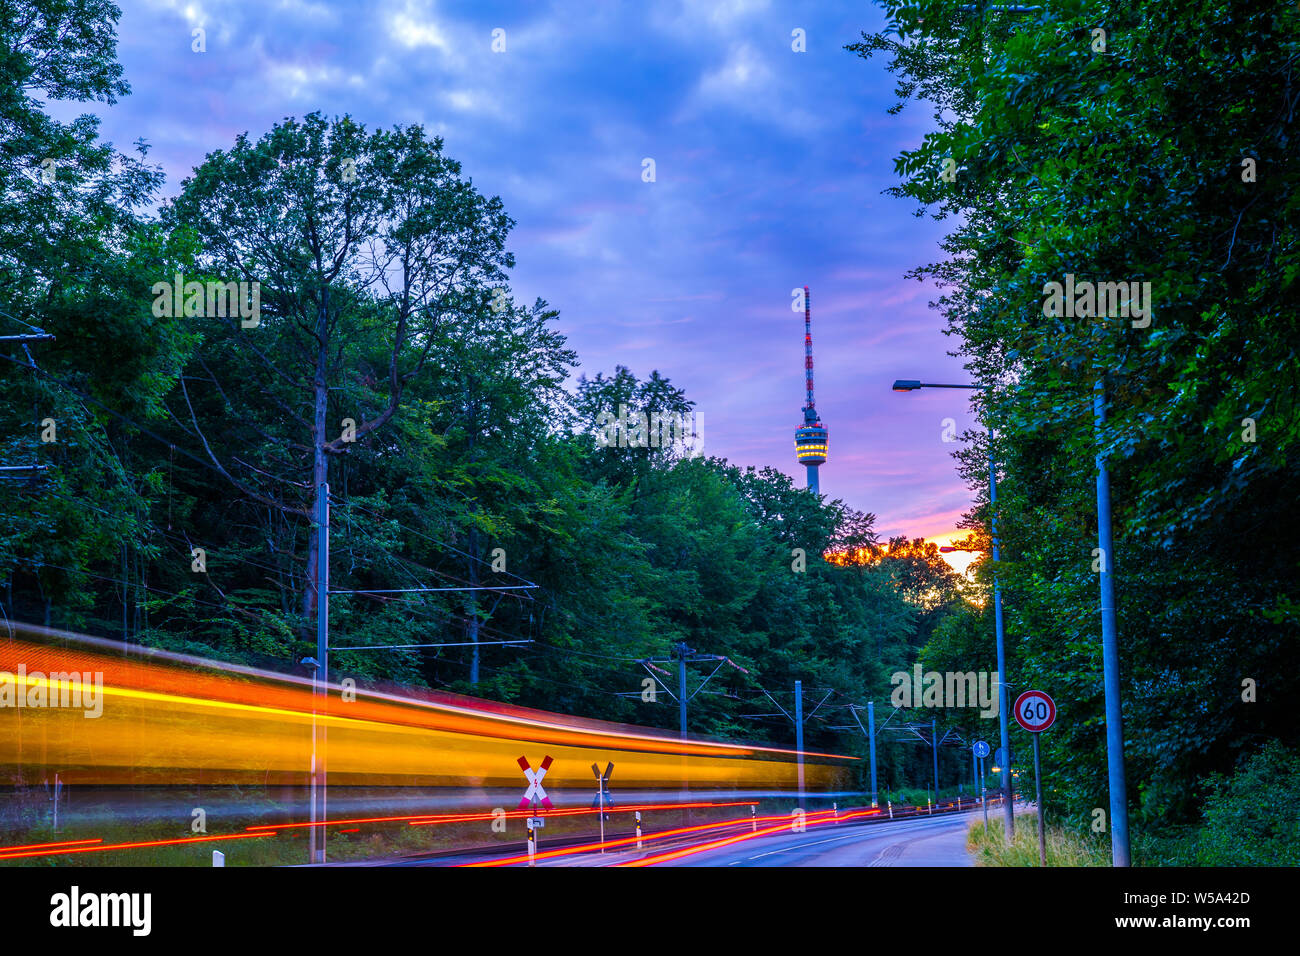 Alemania, encendido luces de tranvía y la torre de televisión de la ciudad de Stuttgart en el bosque en el mágico ambiente Crepúsculo amanecer después del atardecer en verano Foto de stock